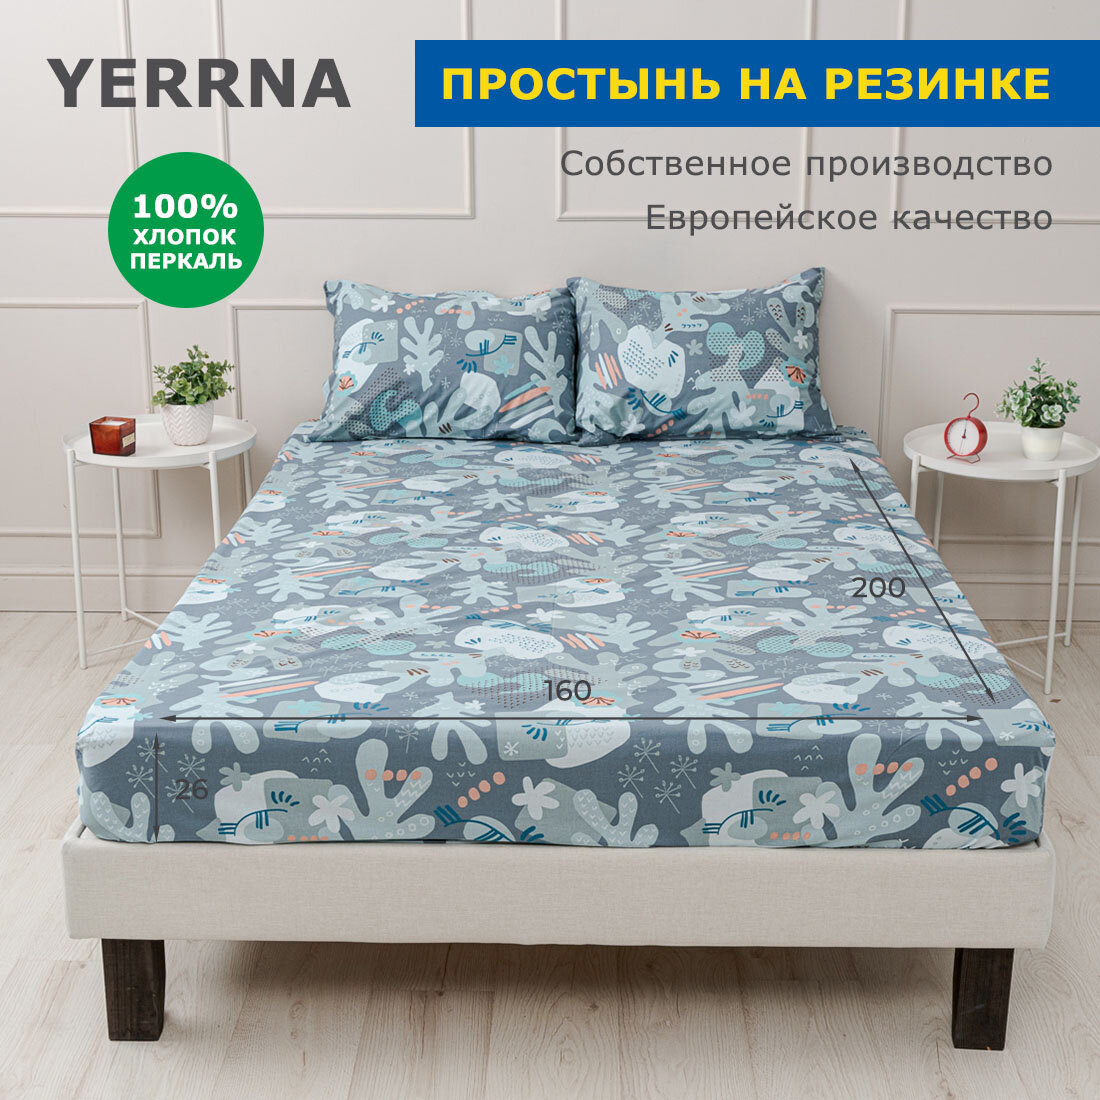 Простынь на резинке 160х200 хлопок натуральный перкаль подходит под размеры икея IKEA 15 спальная YERRNA Шуйские ситцы